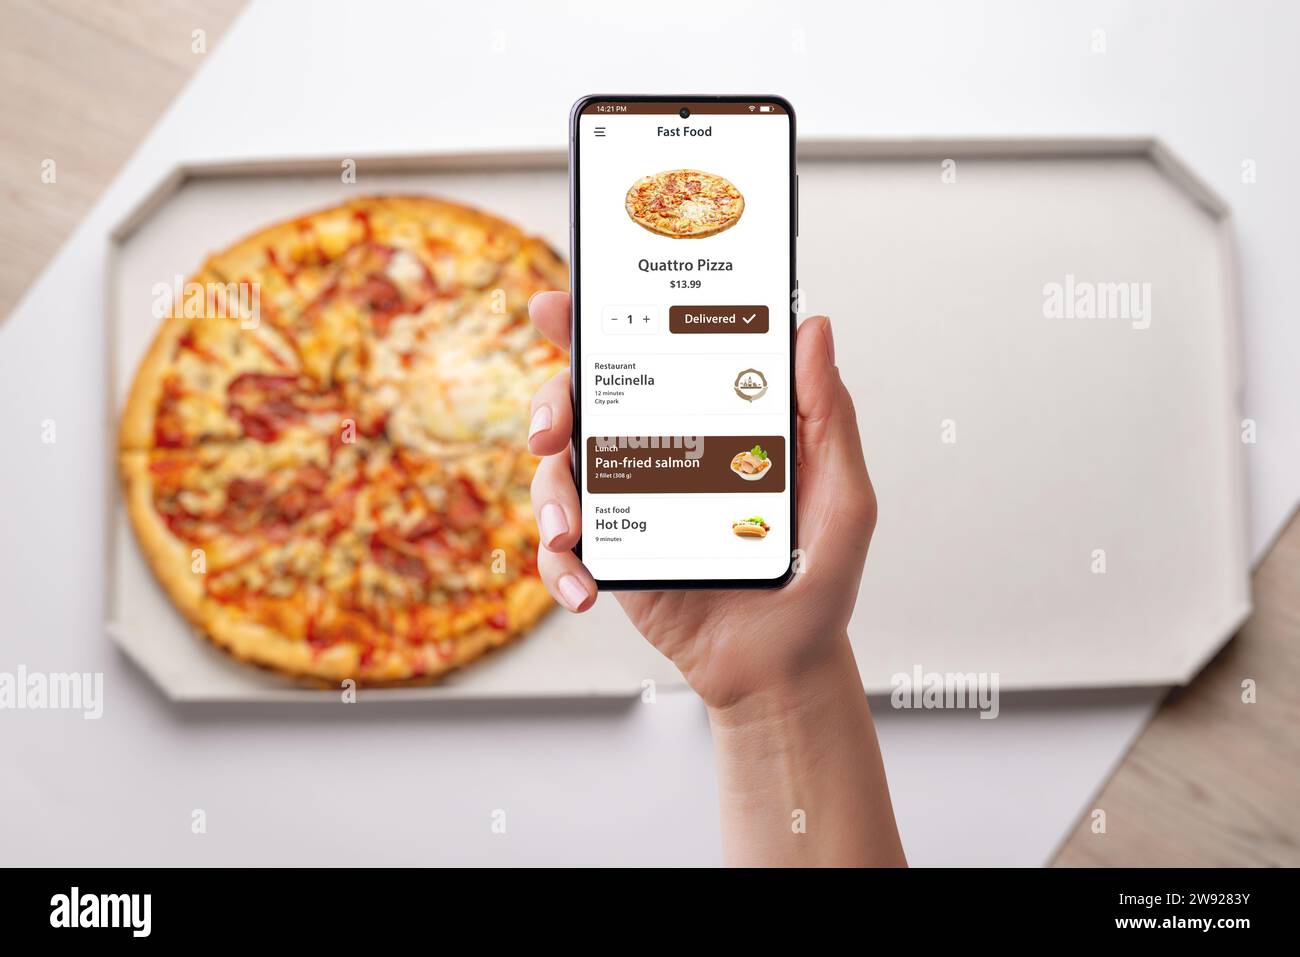 Donna ordina e apprezza una pizza Quatro, consegnata alla sua scrivania tramite una moderna app per smartphone. Design senza cuciture per una deliziosa esperienza culinaria Foto Stock